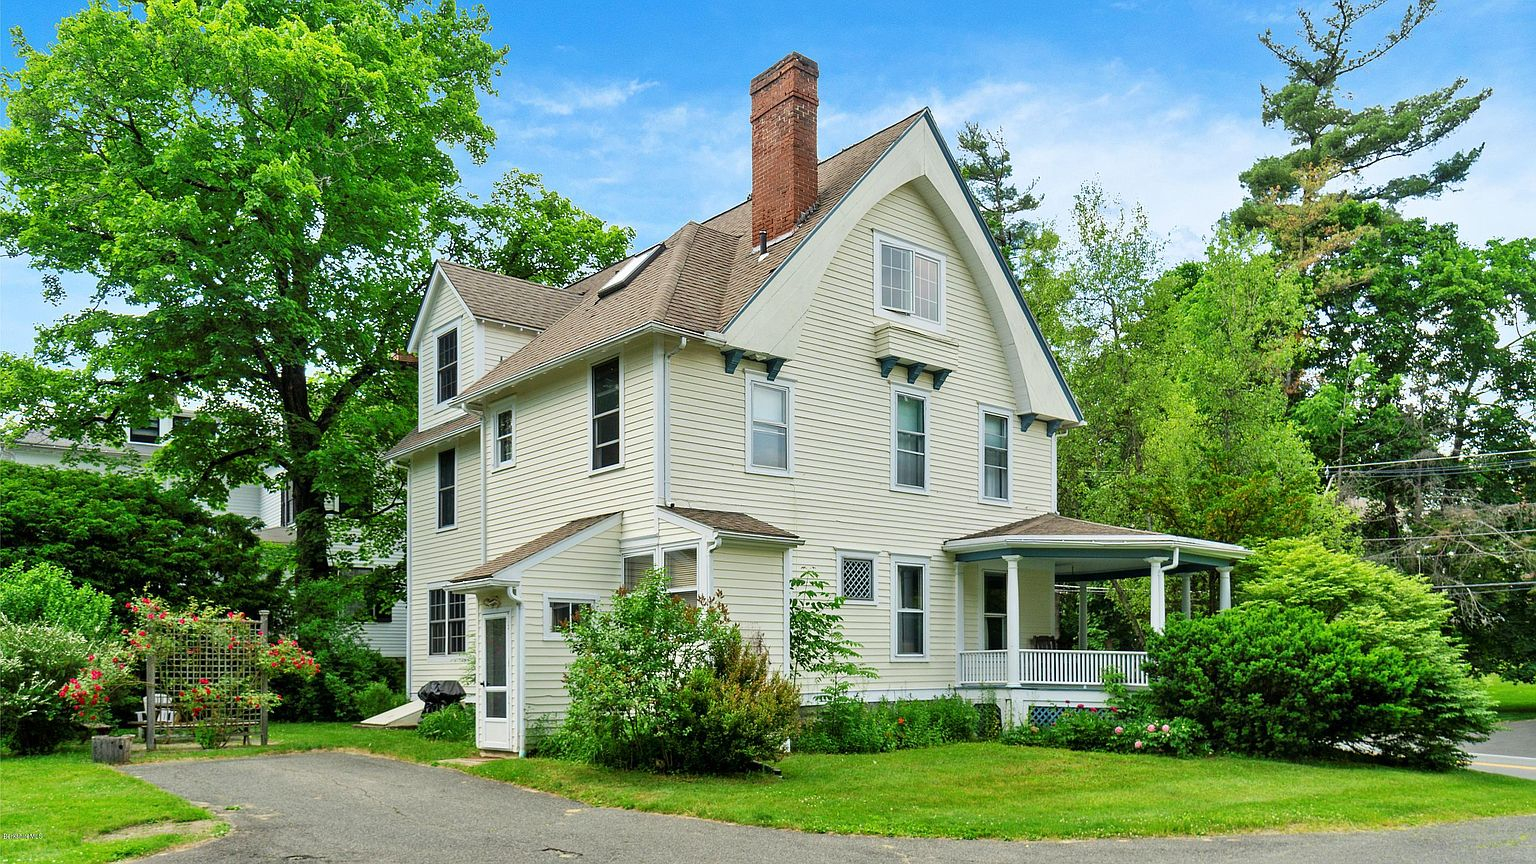 5 Houses For Sale In Great Barrington Massachusetts